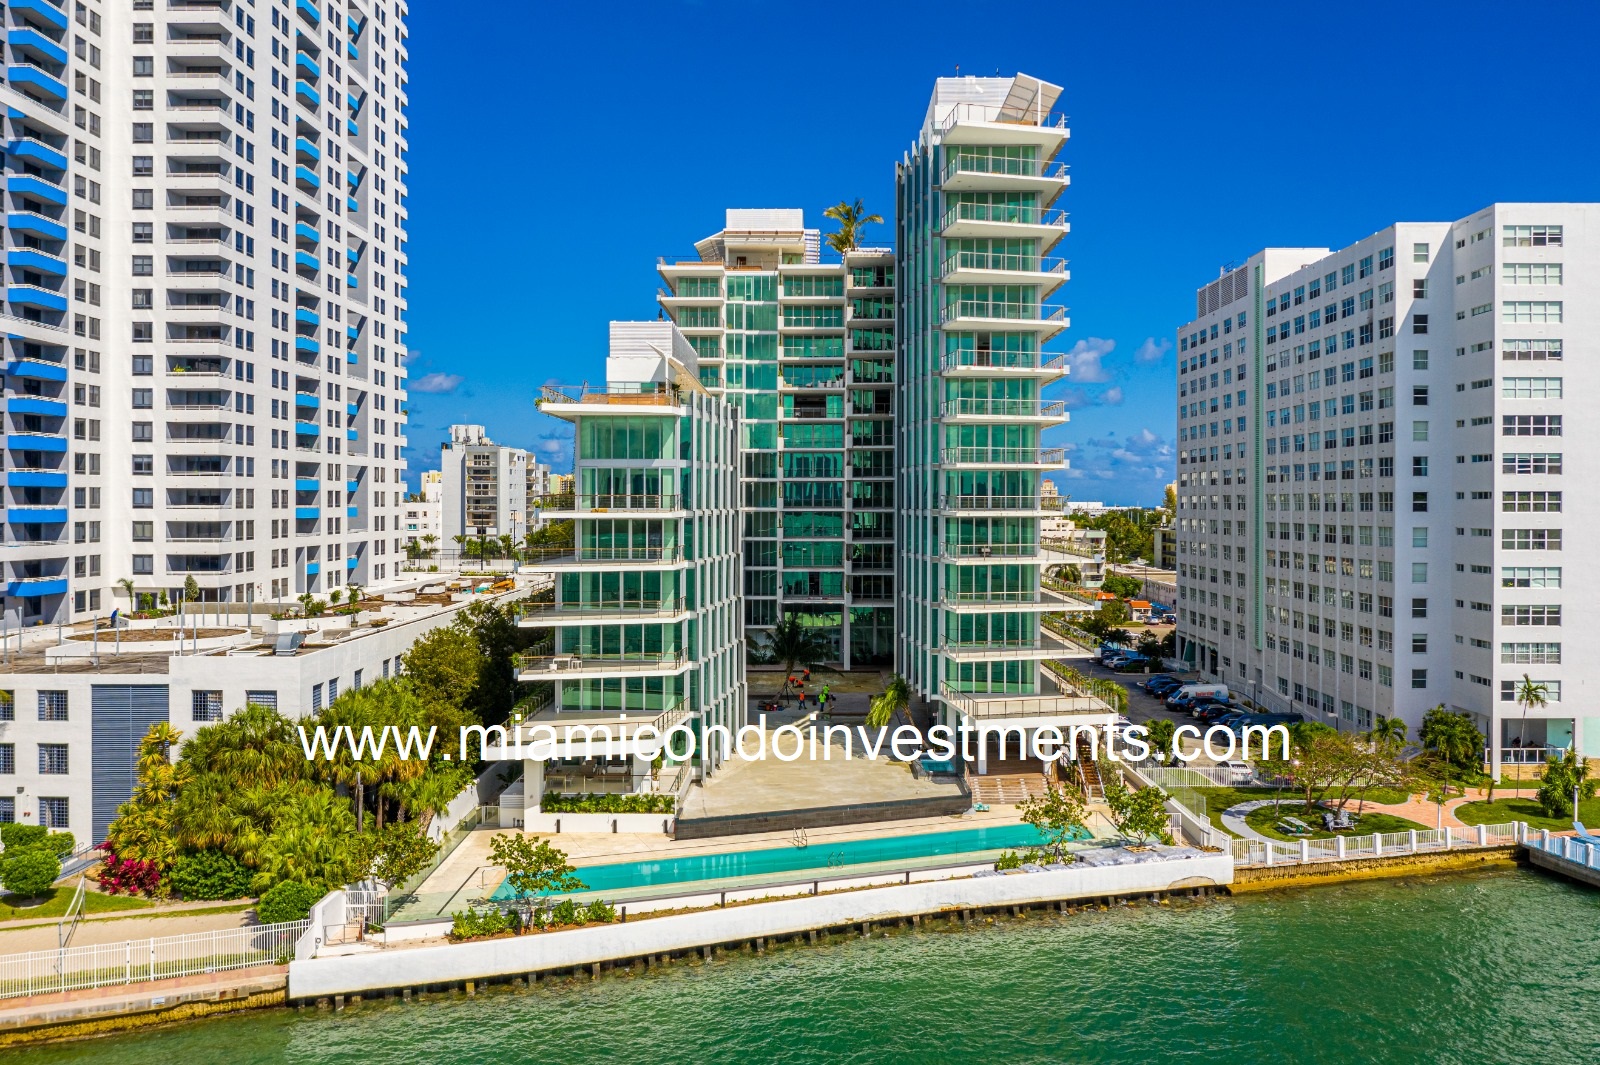 Monad Terrace Miami Beach